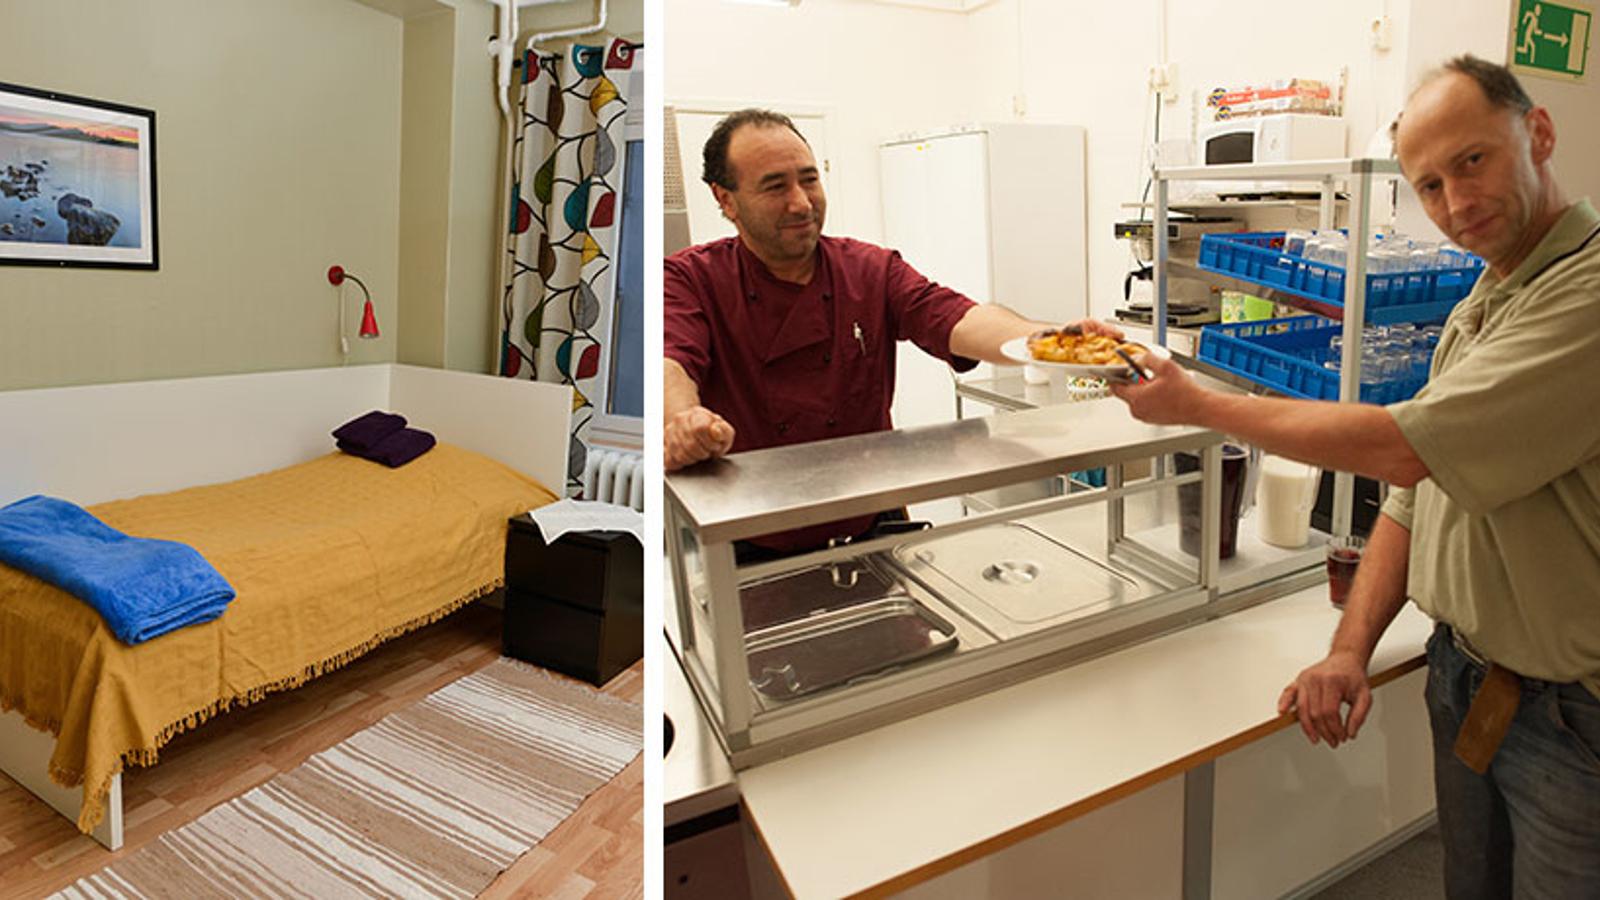 Till vänster: Ett rum med en säng. På väggen hänger det en tavla och på golvet ligger det en randig matta. Till höger: Personal på stödboendet Lilla Bommen i Göteborg som delar ut en tallrik med mat till en man.